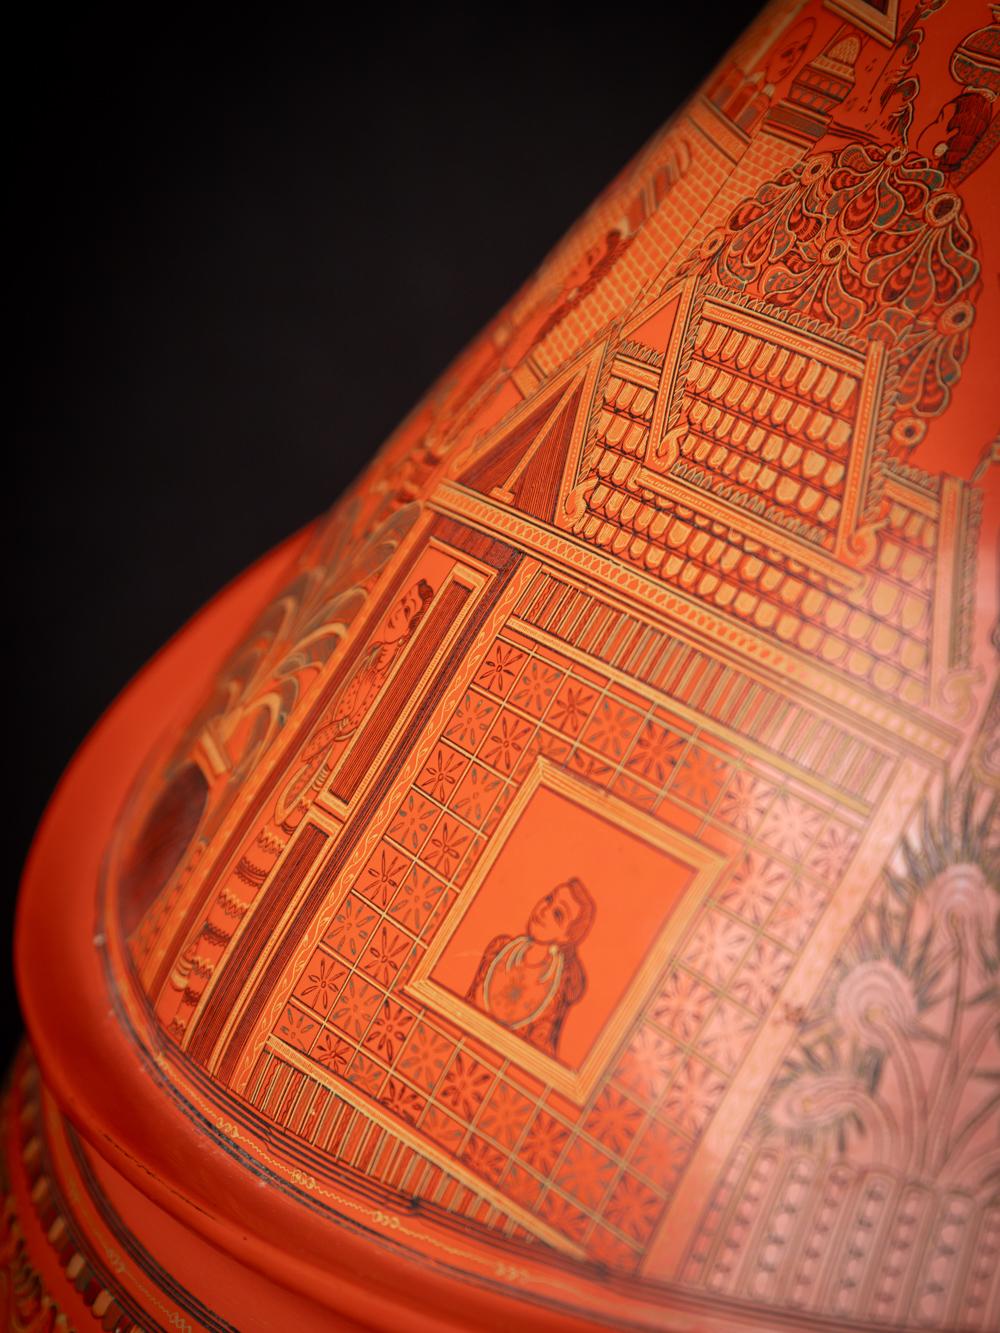 Dieses antike birmanische Lackgefäß ist ein wirklich einzigartiges und besonderes Sammlerstück. Mit einer Höhe von 46 cm und einem Durchmesser von 58 cm ist sie aus Lack gefertigt und wiegt 3,8 kg. Es wird angenommen, dass diese Statue aus Birma